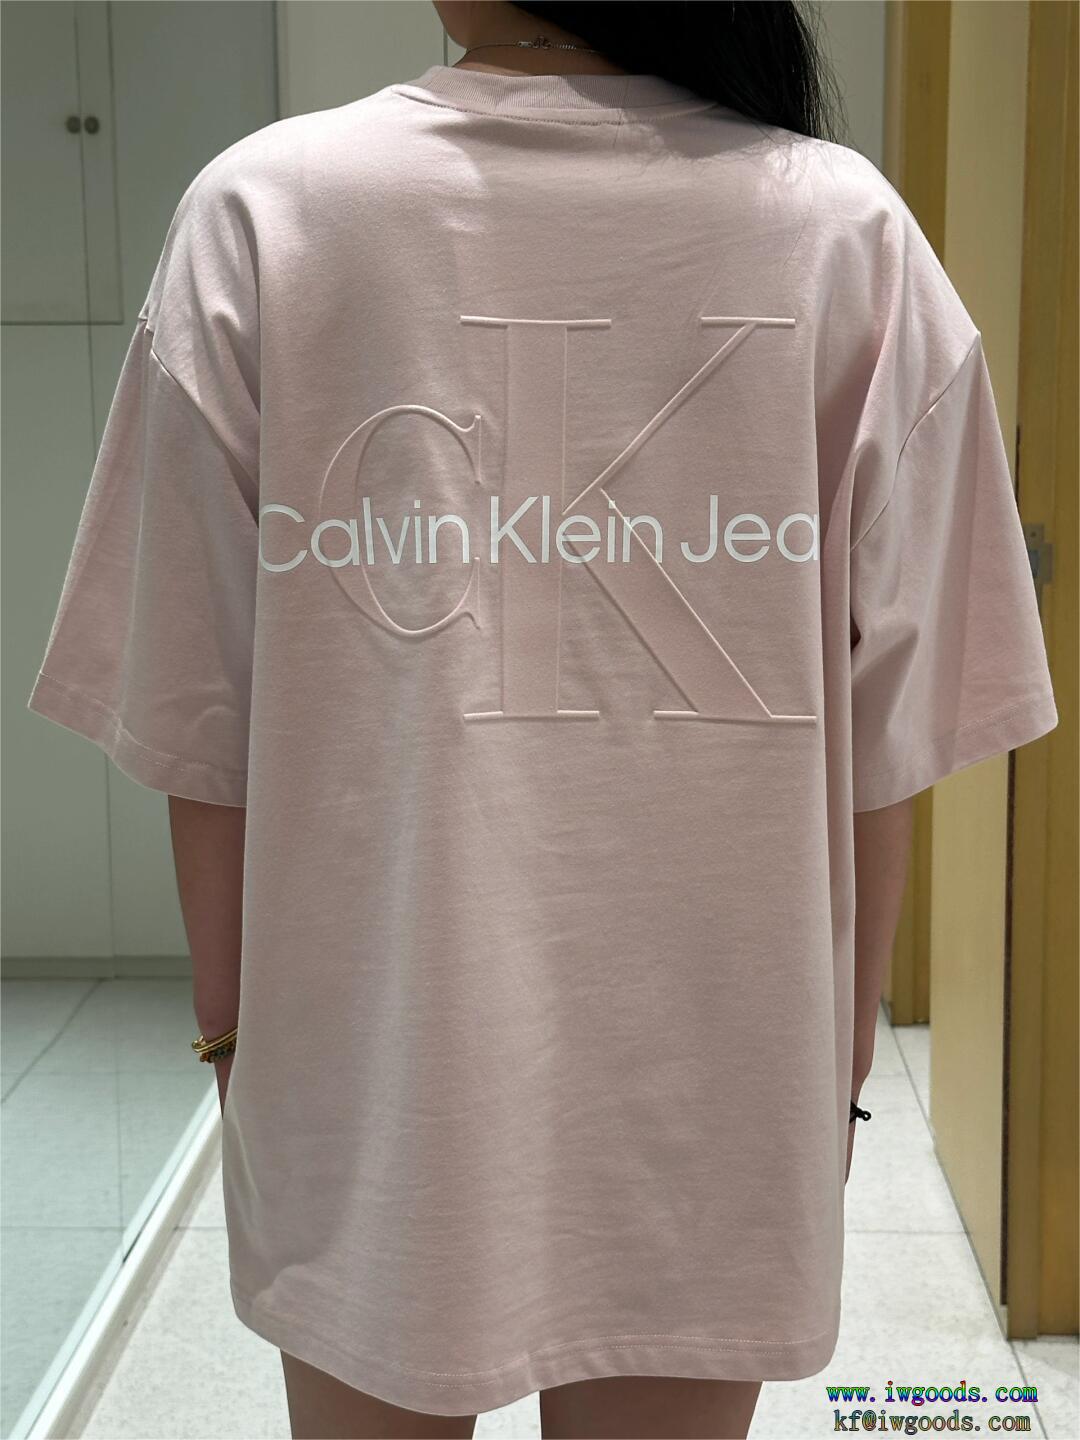 発表の新作モデル狙い目偽 ブランド 販売カルバンクライン Calvin Klein半袖Tシャツ